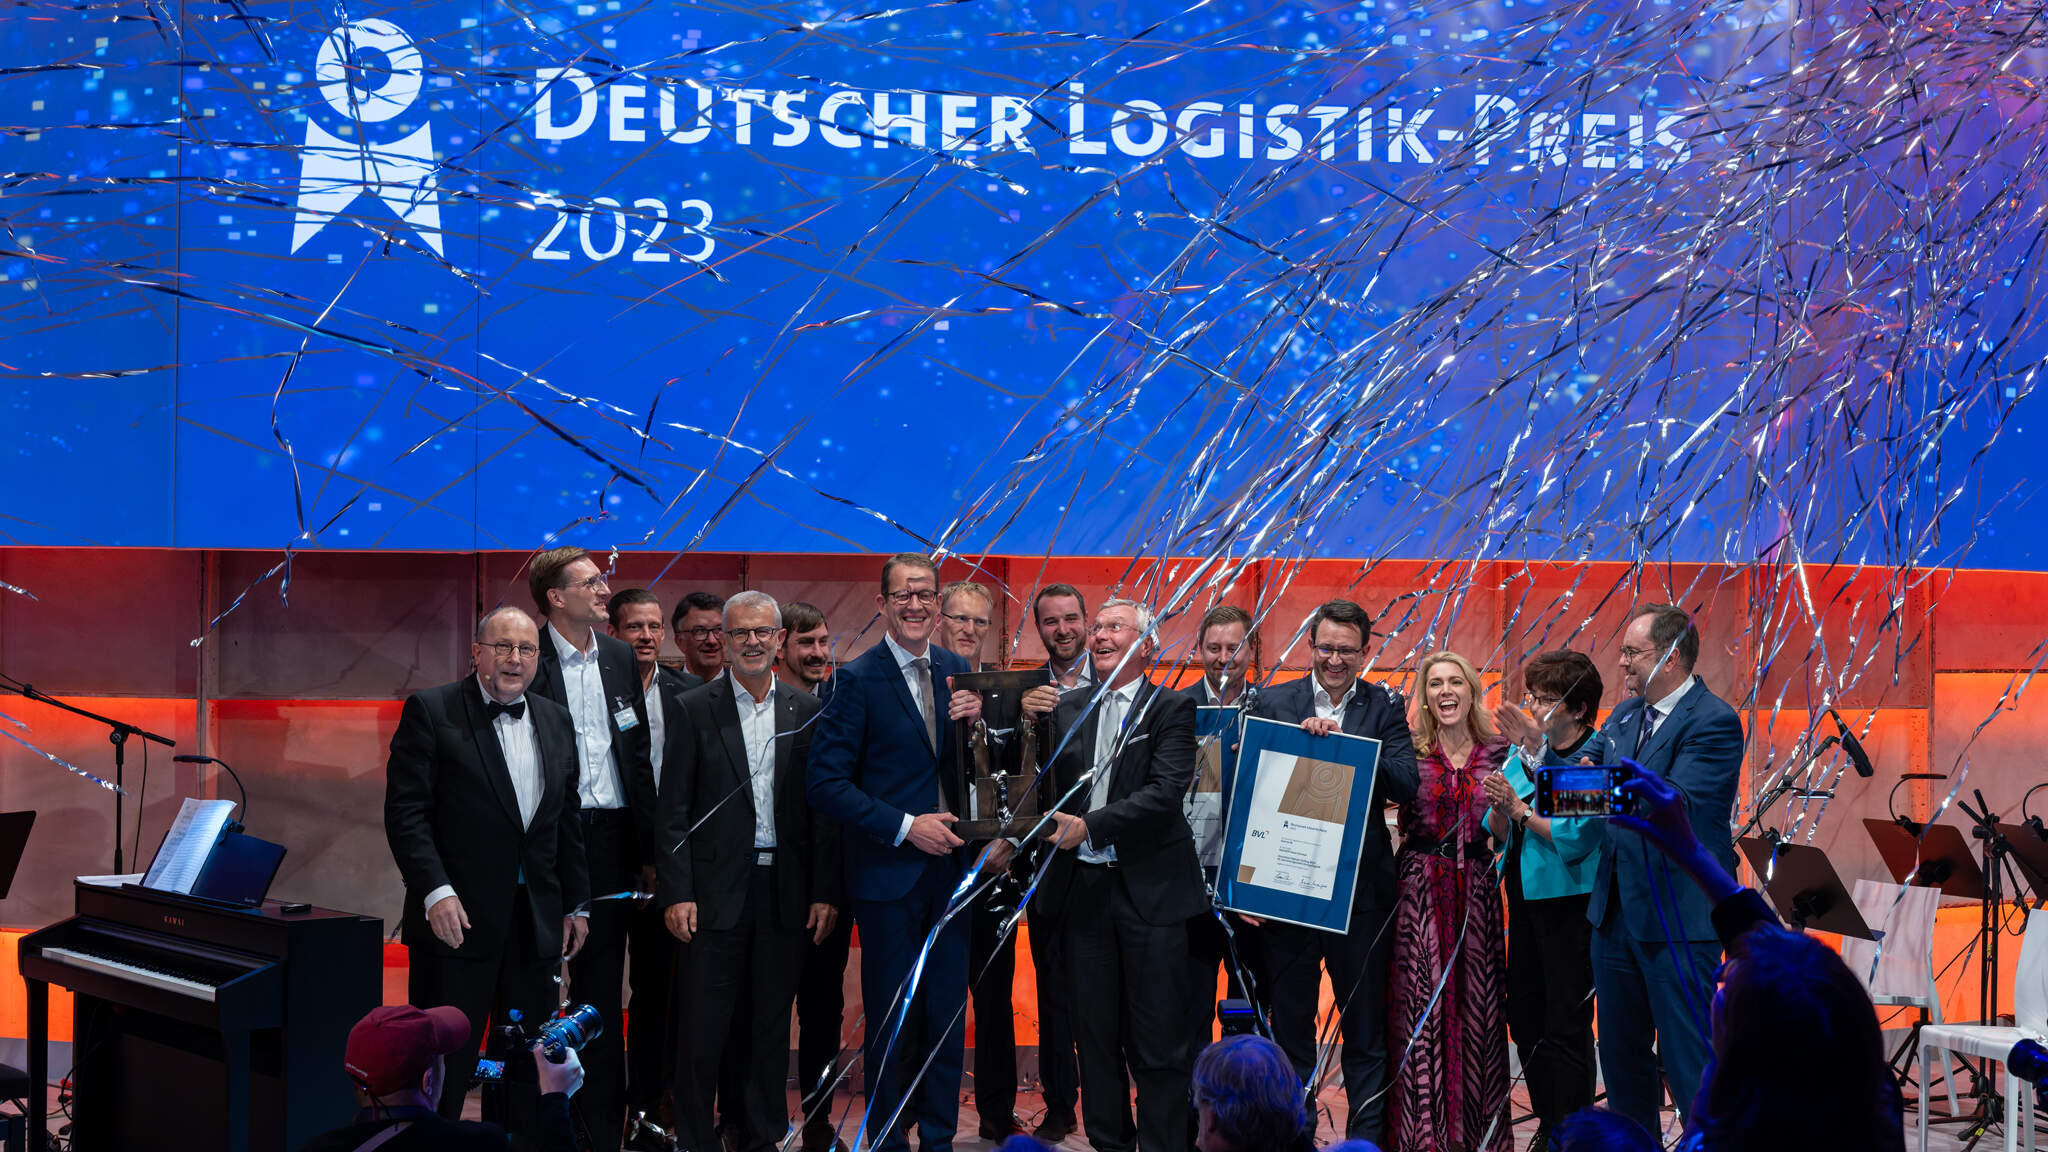 Burkhard Eling, CEO de DACHSER, et Prof. Dr. h.c.. Michael ten Hompel, directeur exécutif du Fraunhofer IML, reçoivent le prix allemand de la logistique en compagnie des équipes du Fraunhofer IML et de DACHSER. Photo: BVL/Bublitz